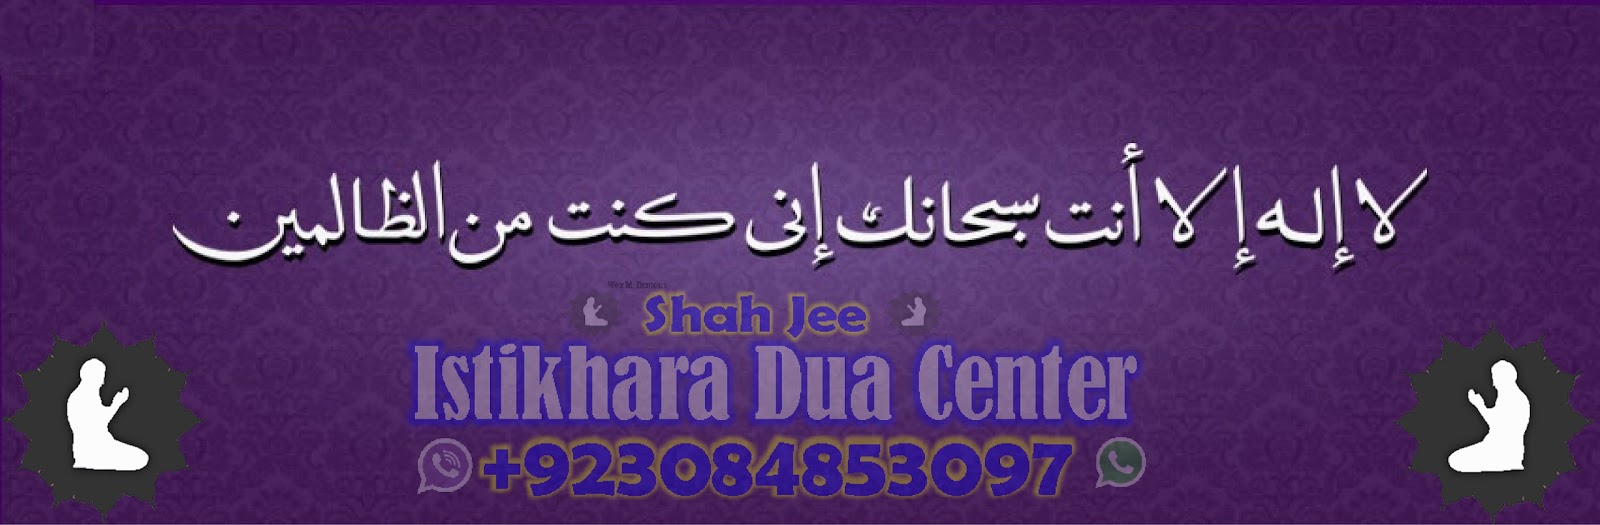 Online Qtv istikhara Dua Center +923084853097 